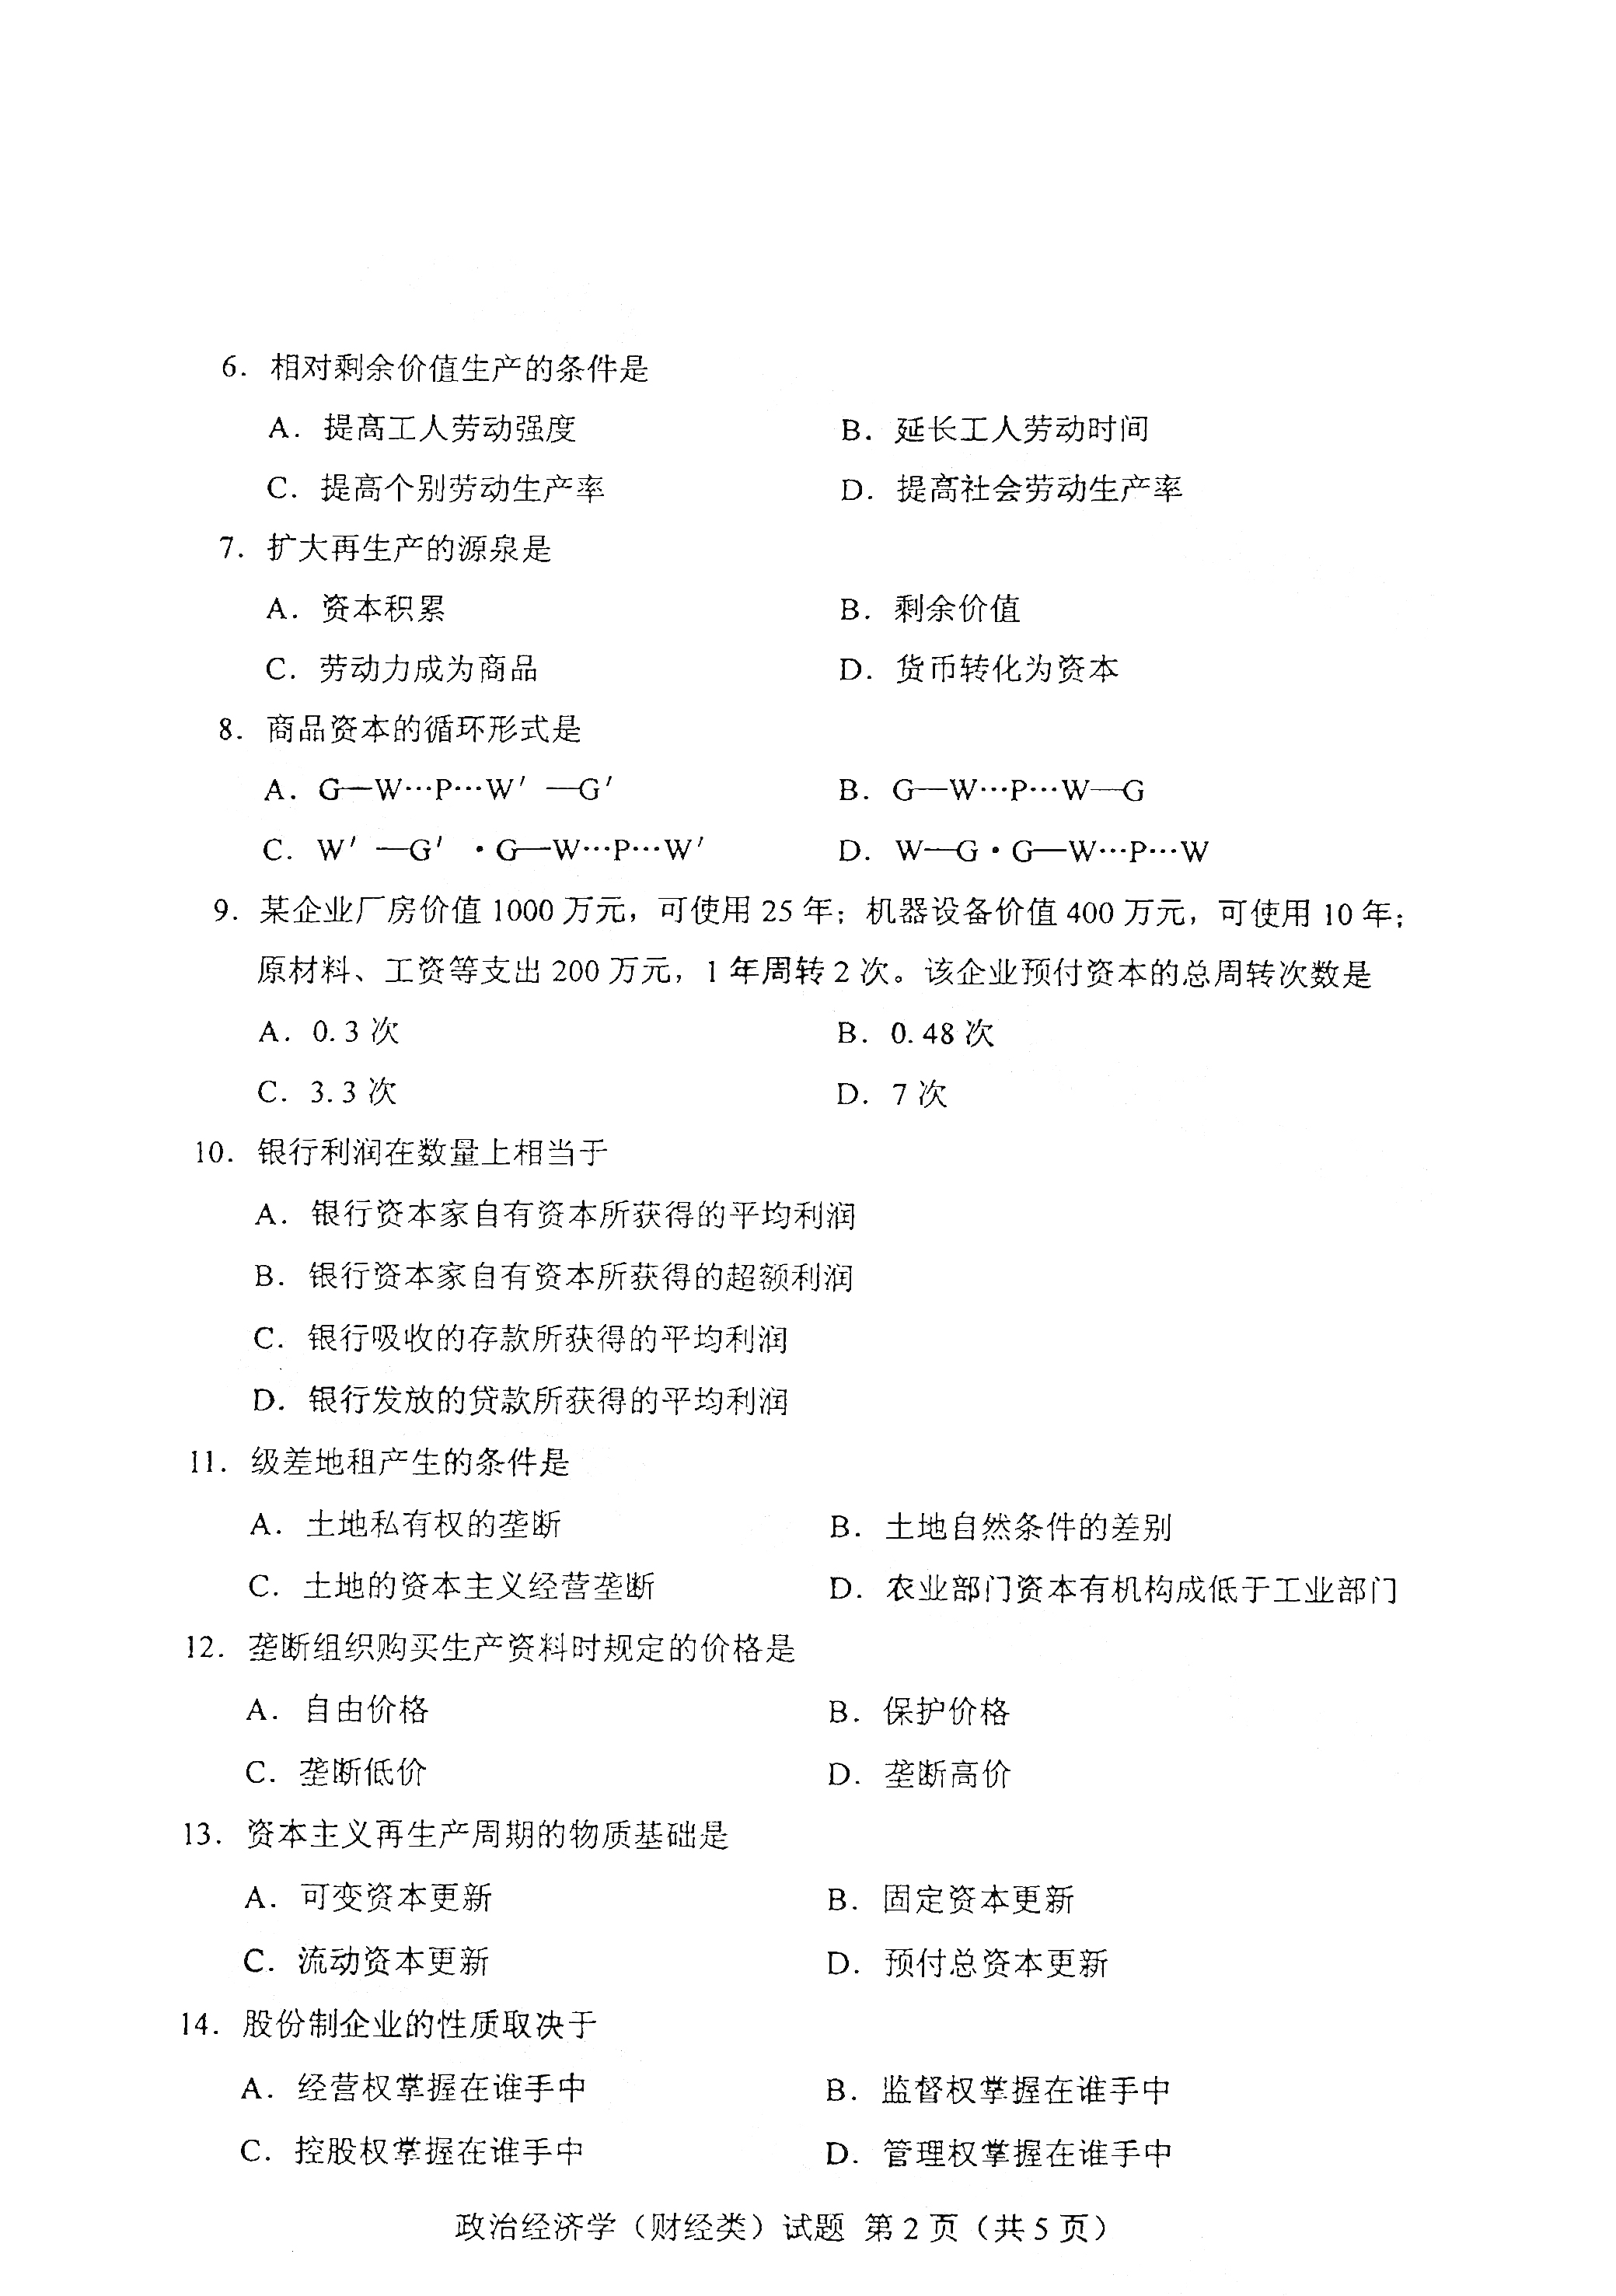 2021年4月上海自考00009 政治经济学(财经类)真题试卷